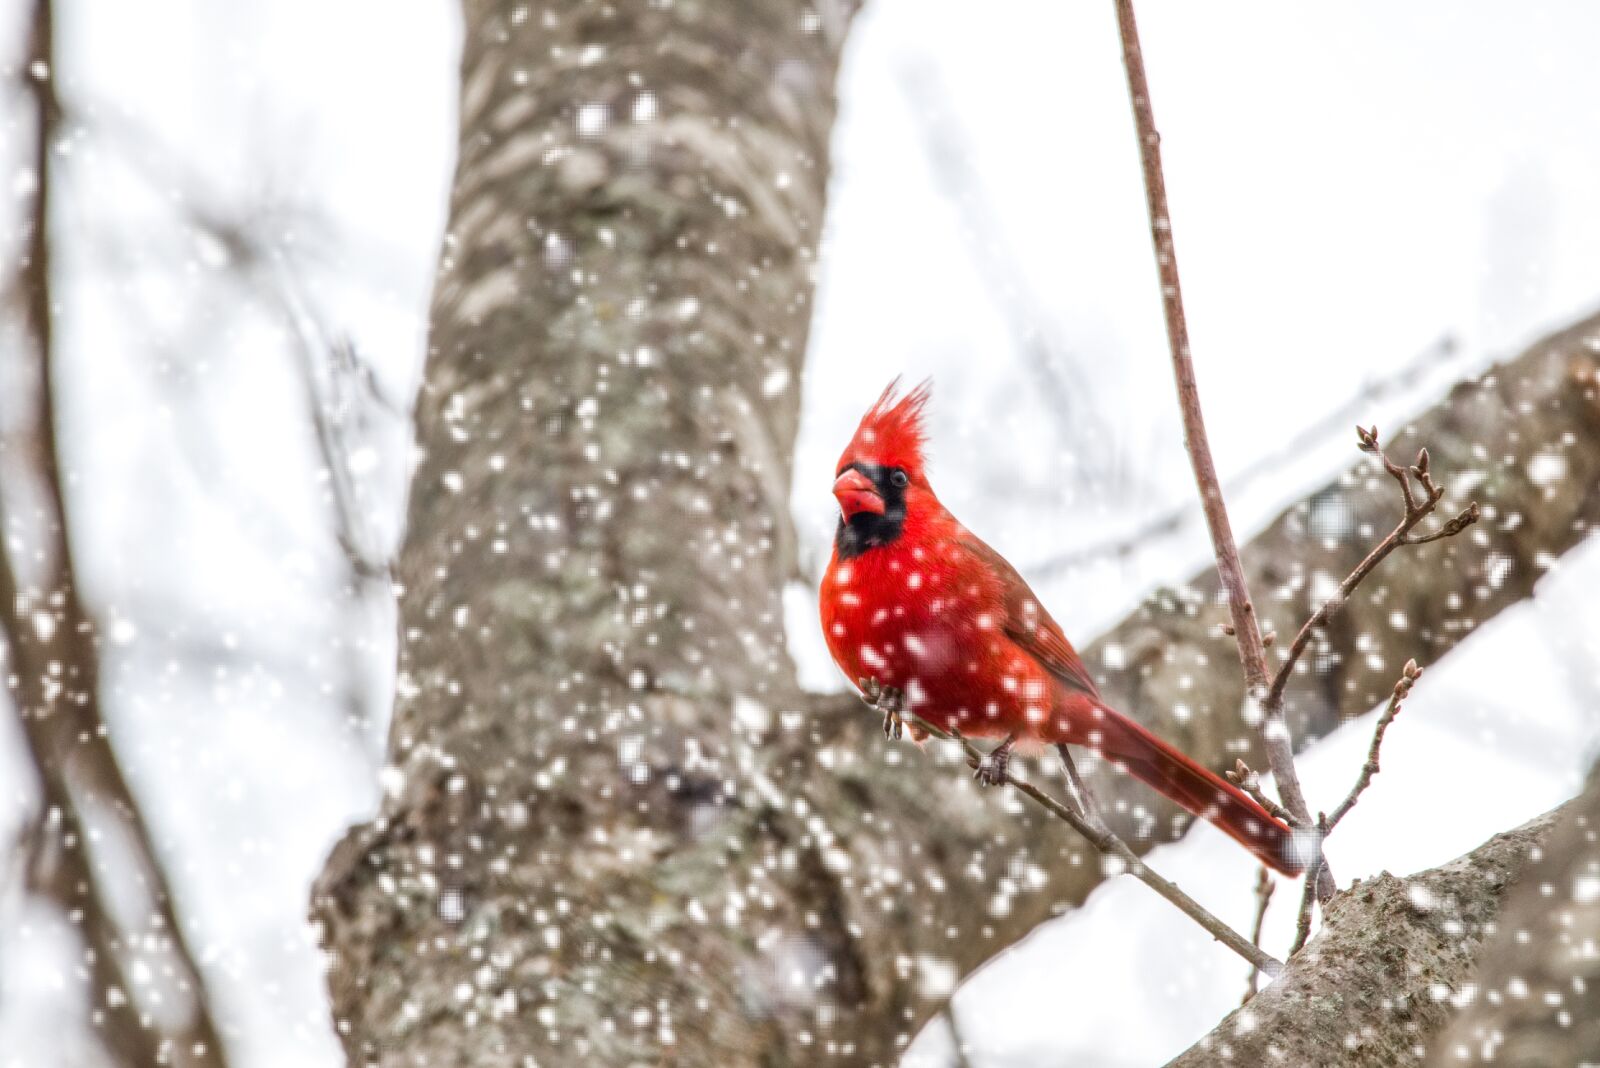 150.0 - 600.0 mm sample photo. Cardinal, snow, nature photography